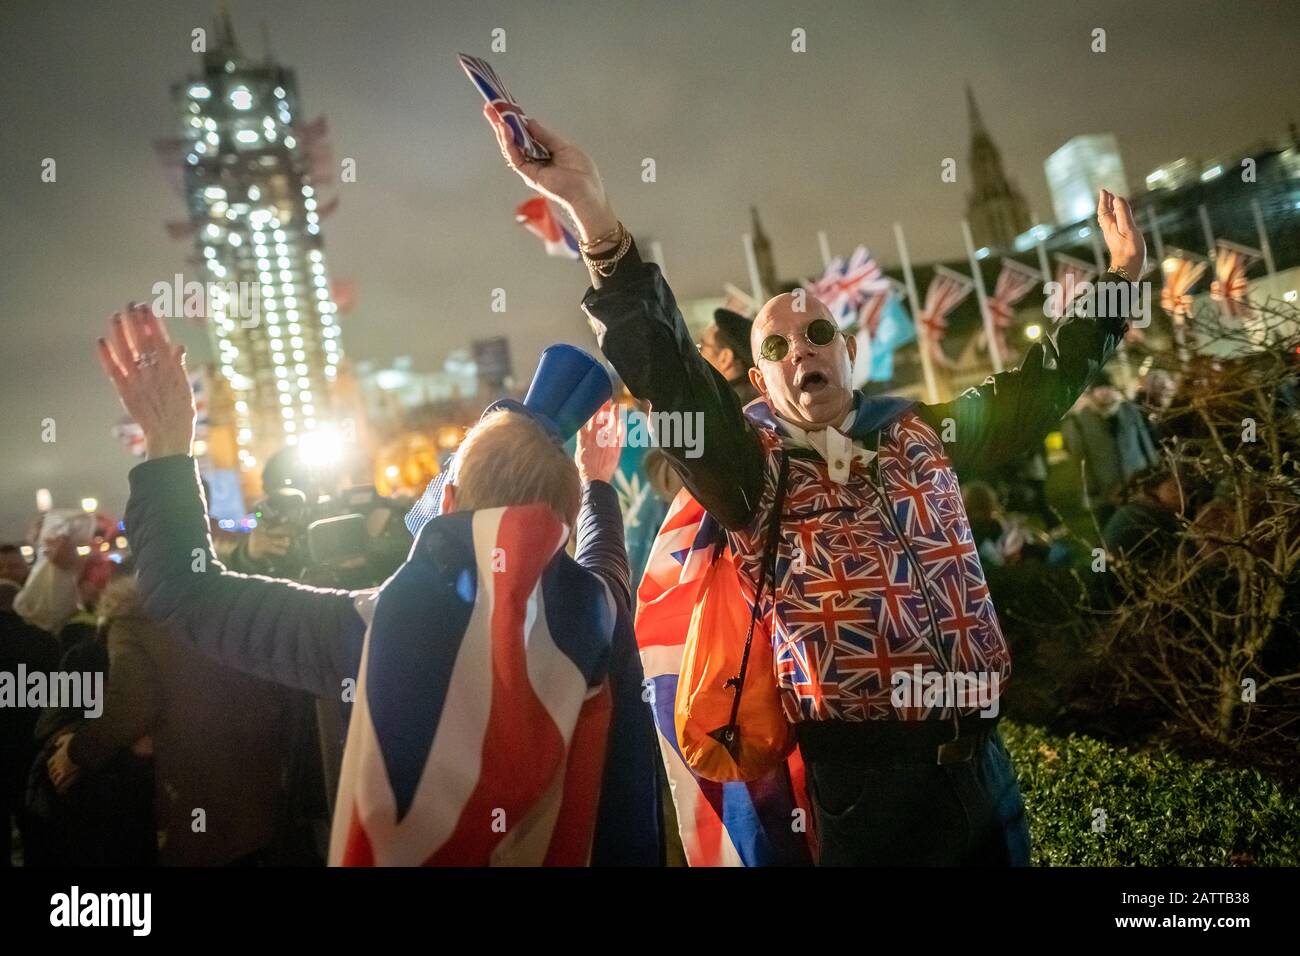 Le 31 janvier 2020, jour du Brexit au Royaume-Uni. Les célébrations à Londres, alors que le Royaume-Uni quitte enfin l'Union européenne après une relation de 47 ans. Banque D'Images